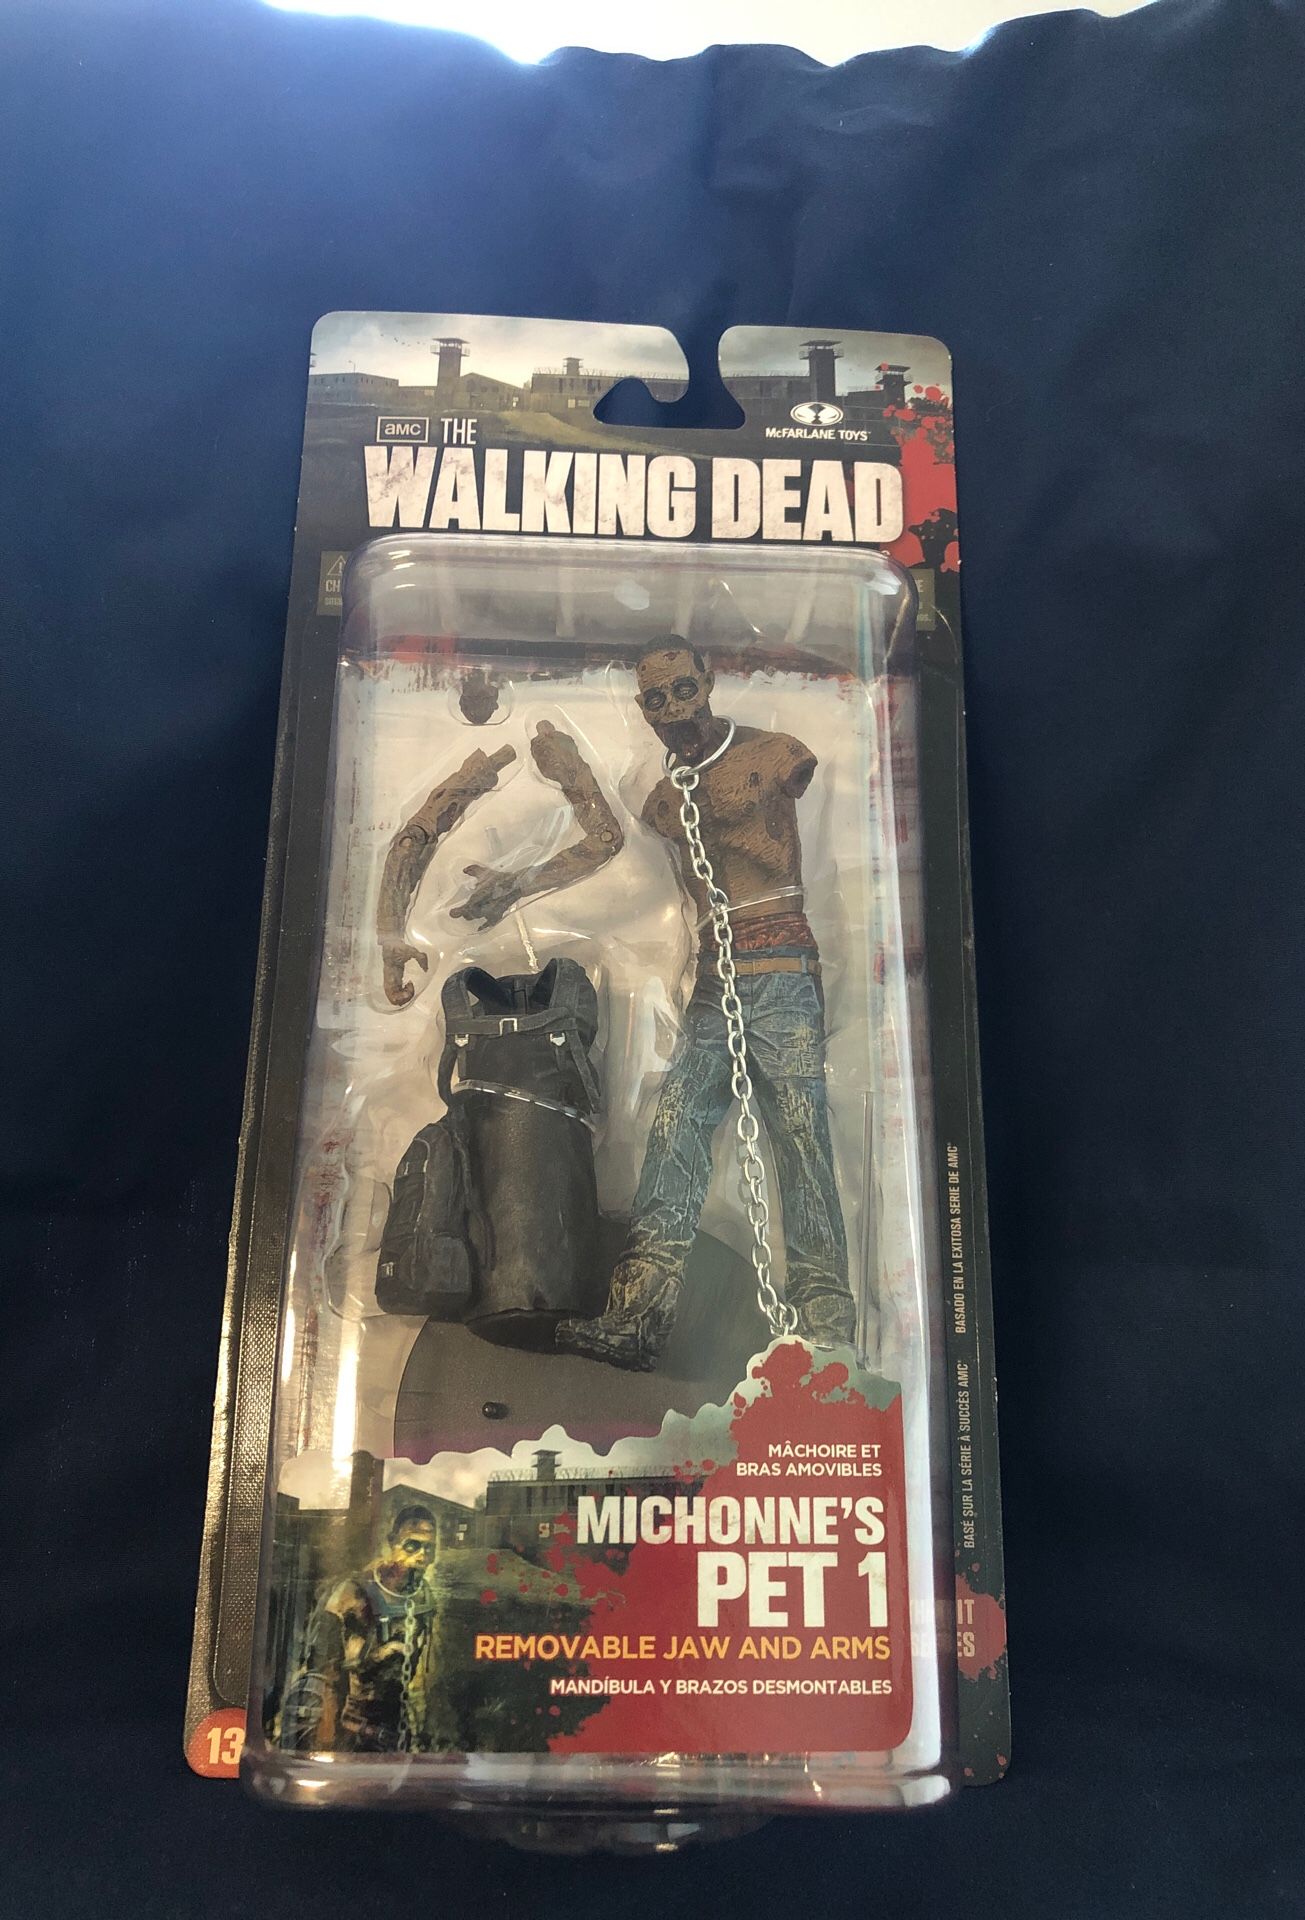 The Walking Dead -Series 3 Michonne’s Pet 1